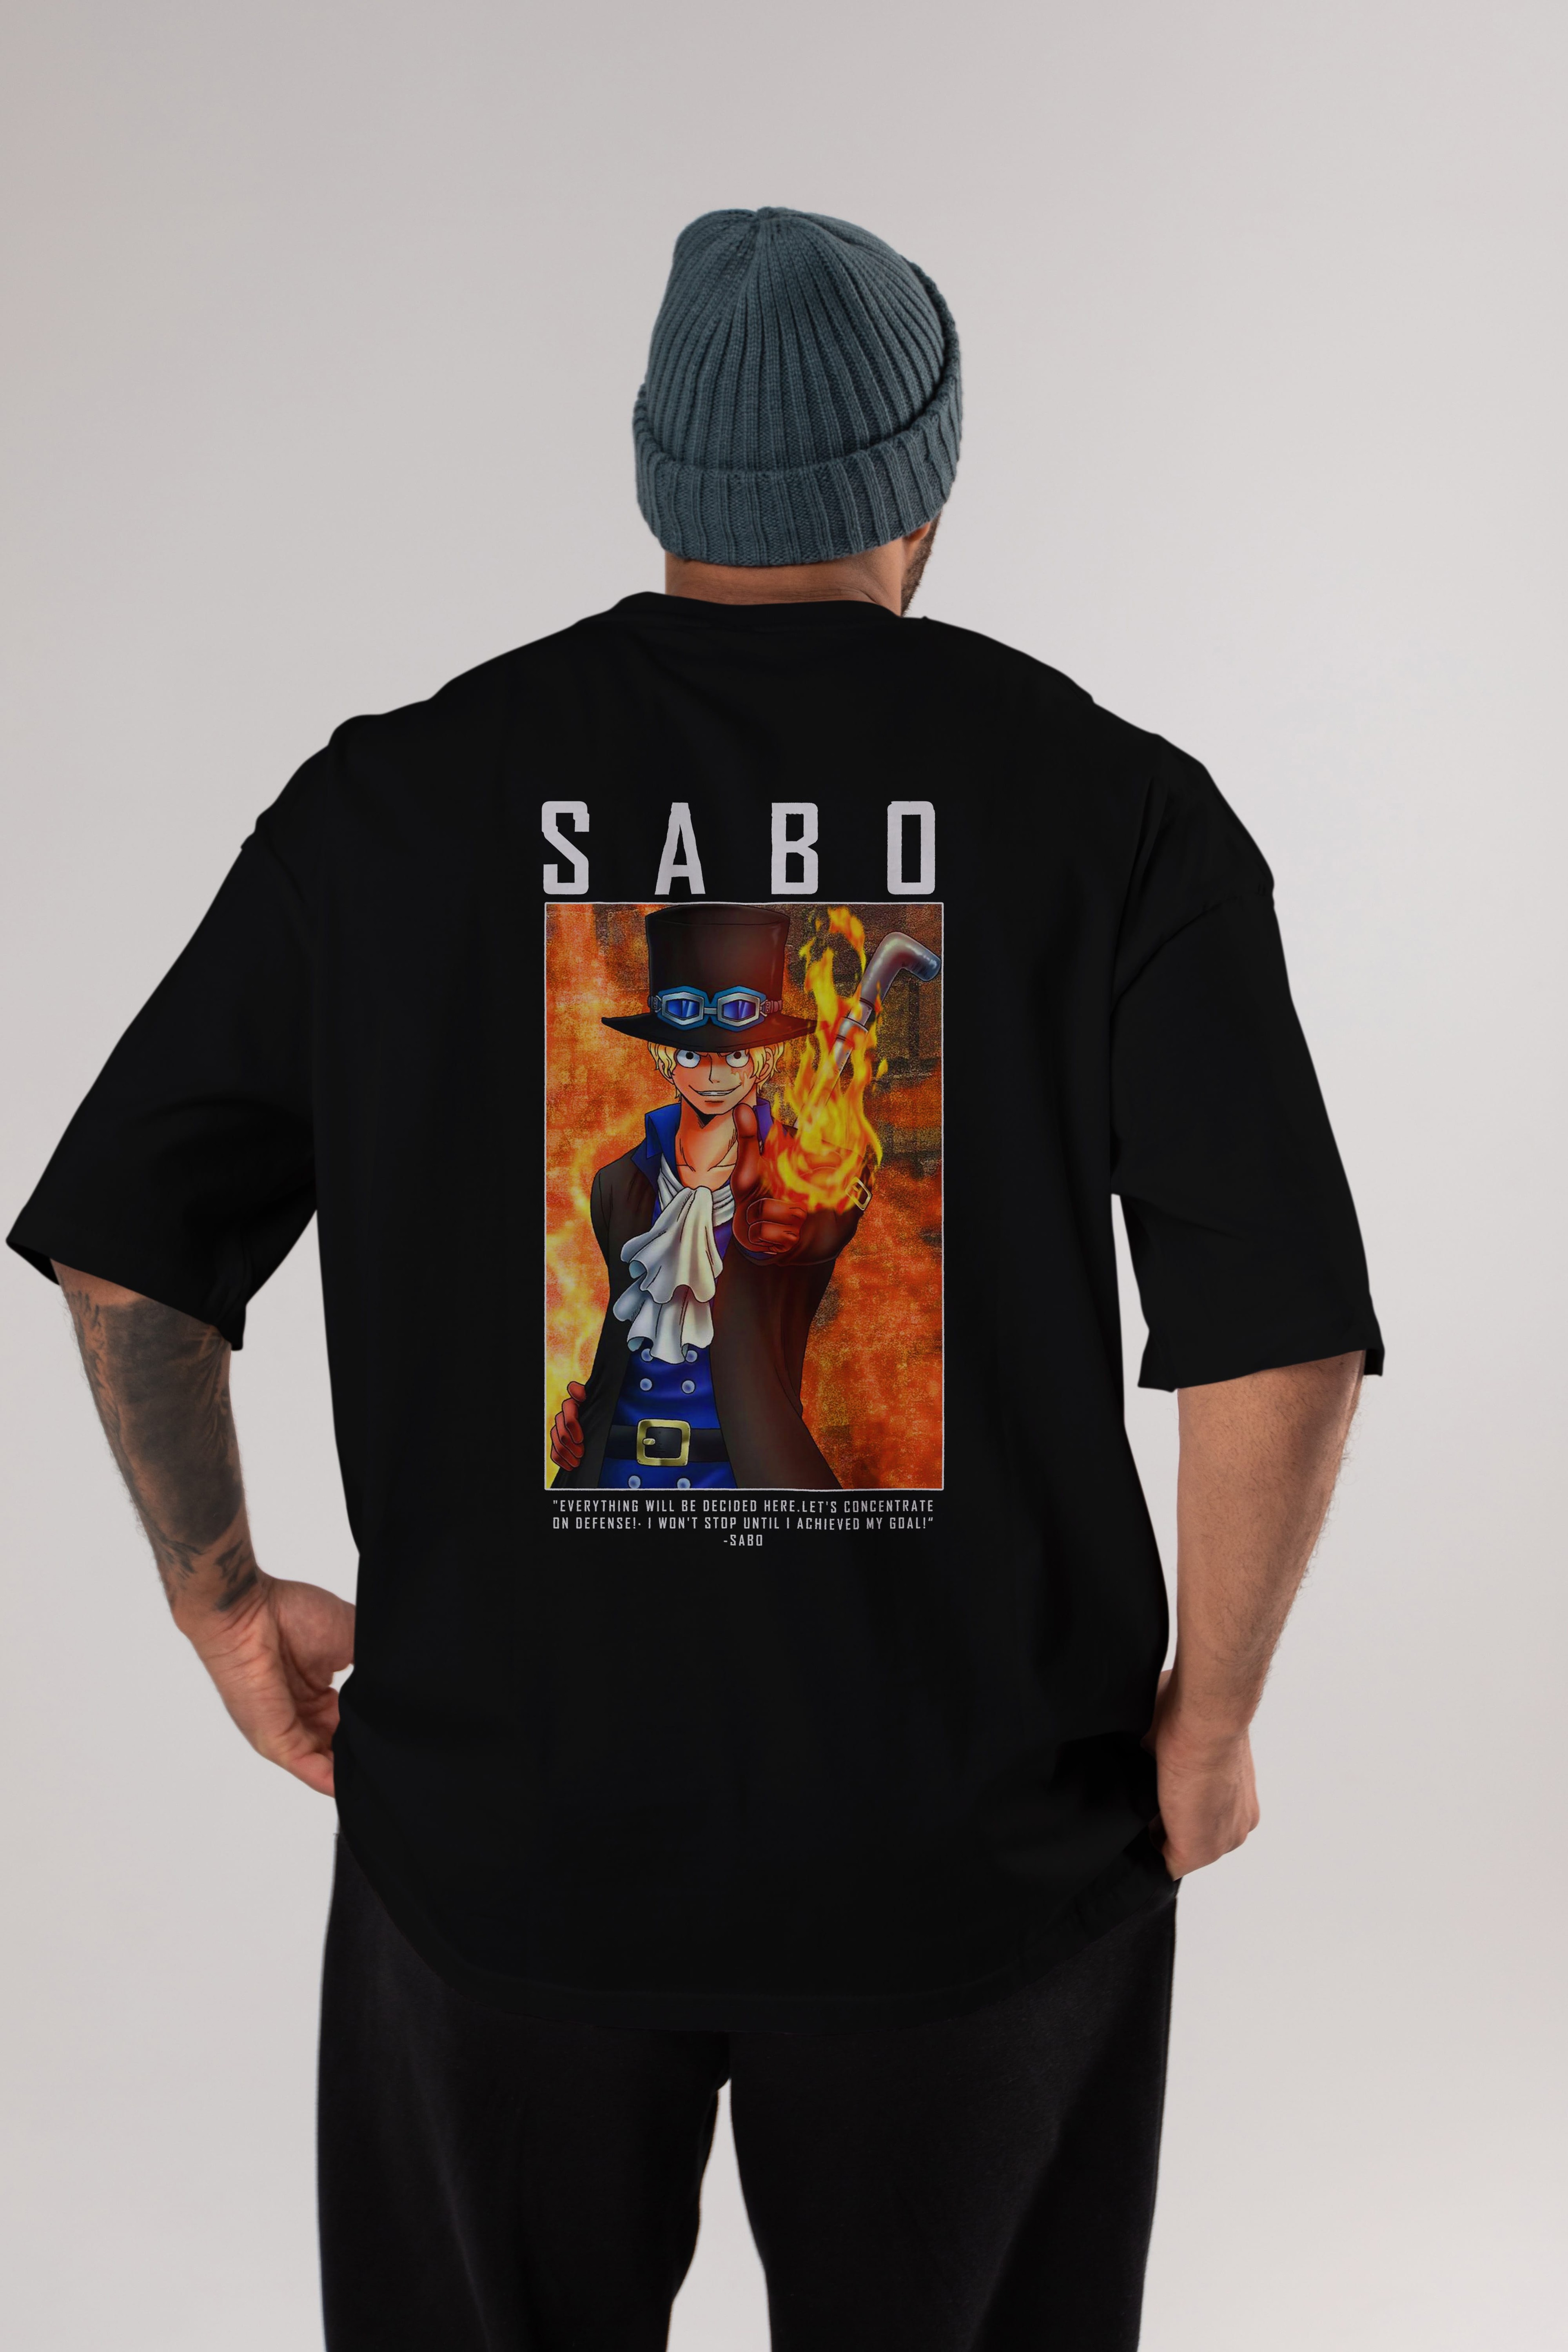 Sabo Anime Arka Baskılı Oversize t-shirt Erkek Kadın Unisex %100 pamuk tişort